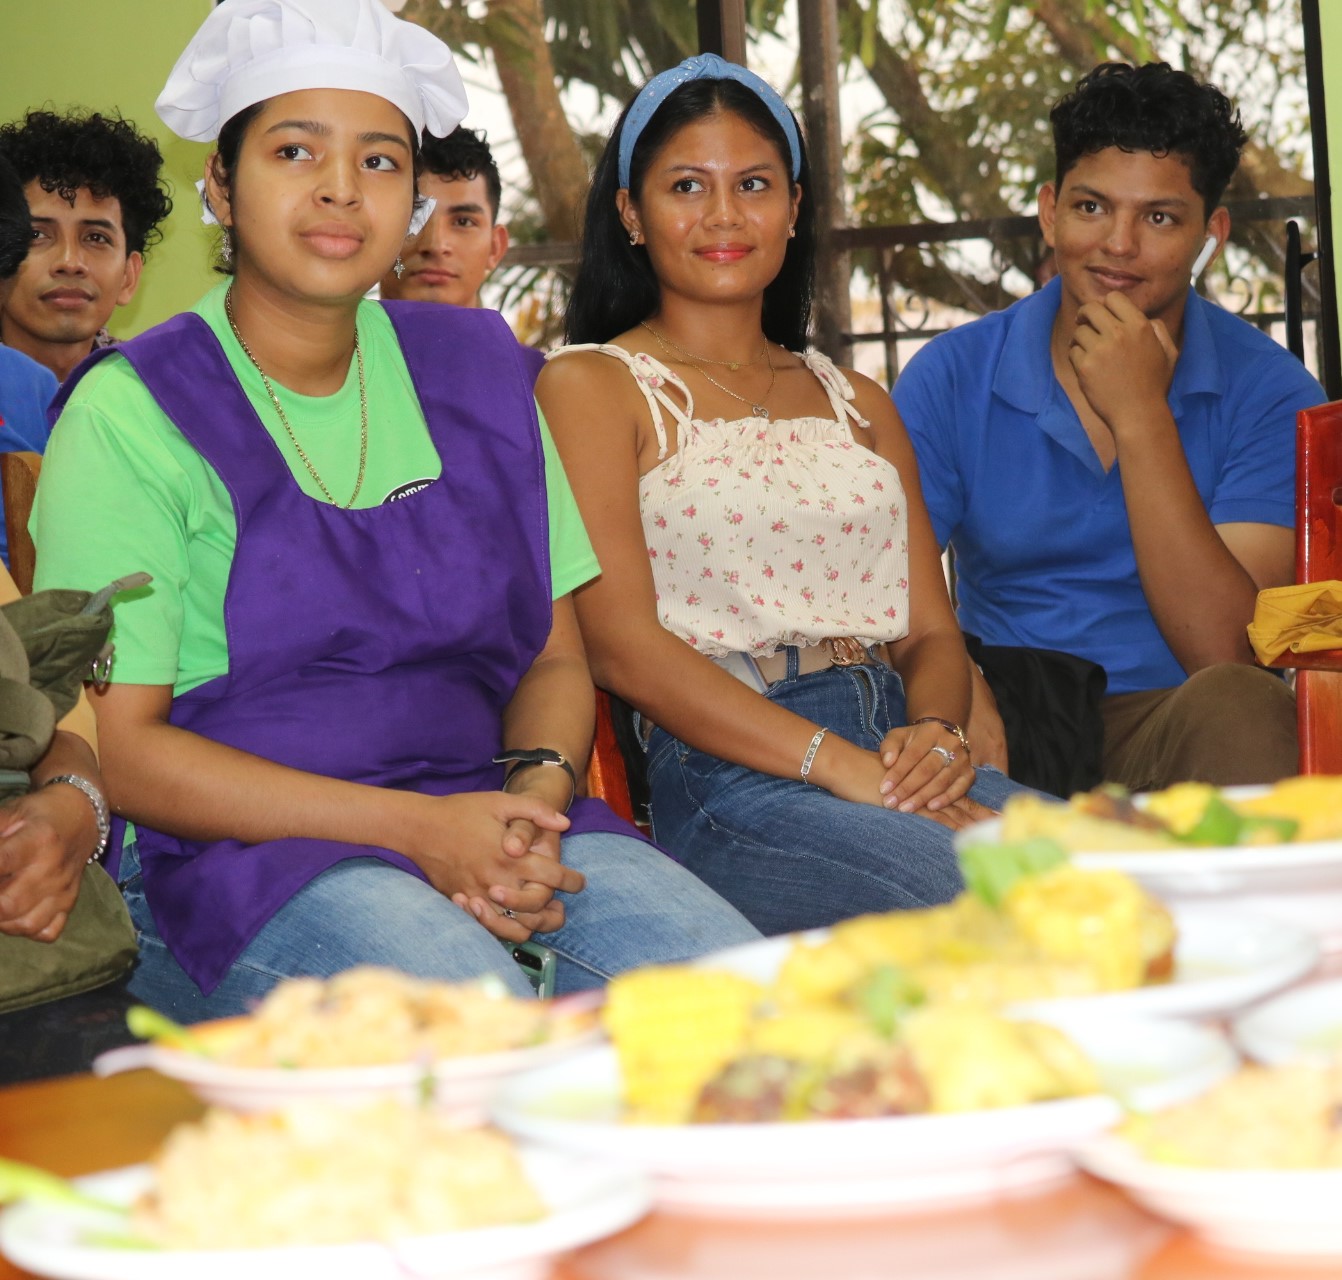 Protagonistas del curso culinario “Delicatessen del Mar”, concluyeron con éxito sus procesos de aprendizaje